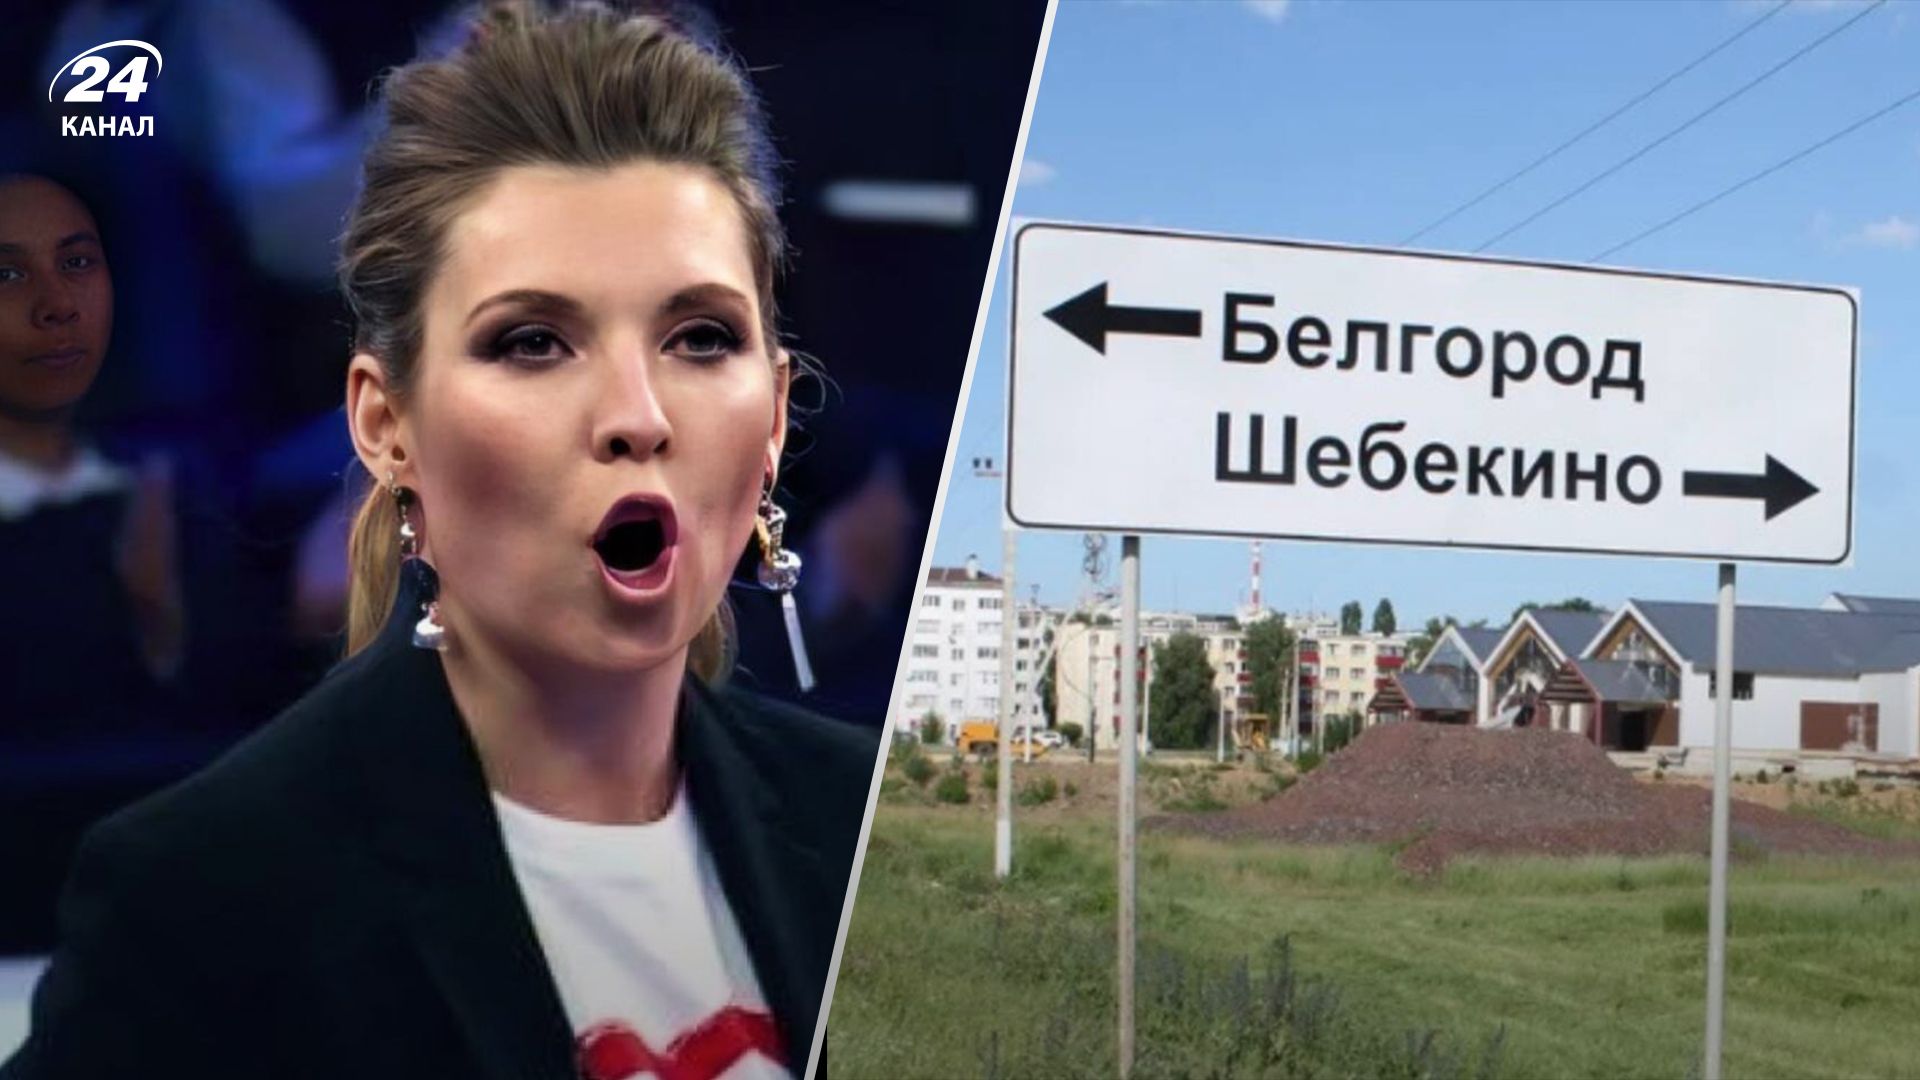 Шемякино, Шмекино: как "эксперты" Скабеевой пытались произнести название города на Белгородщине - 24 Канал